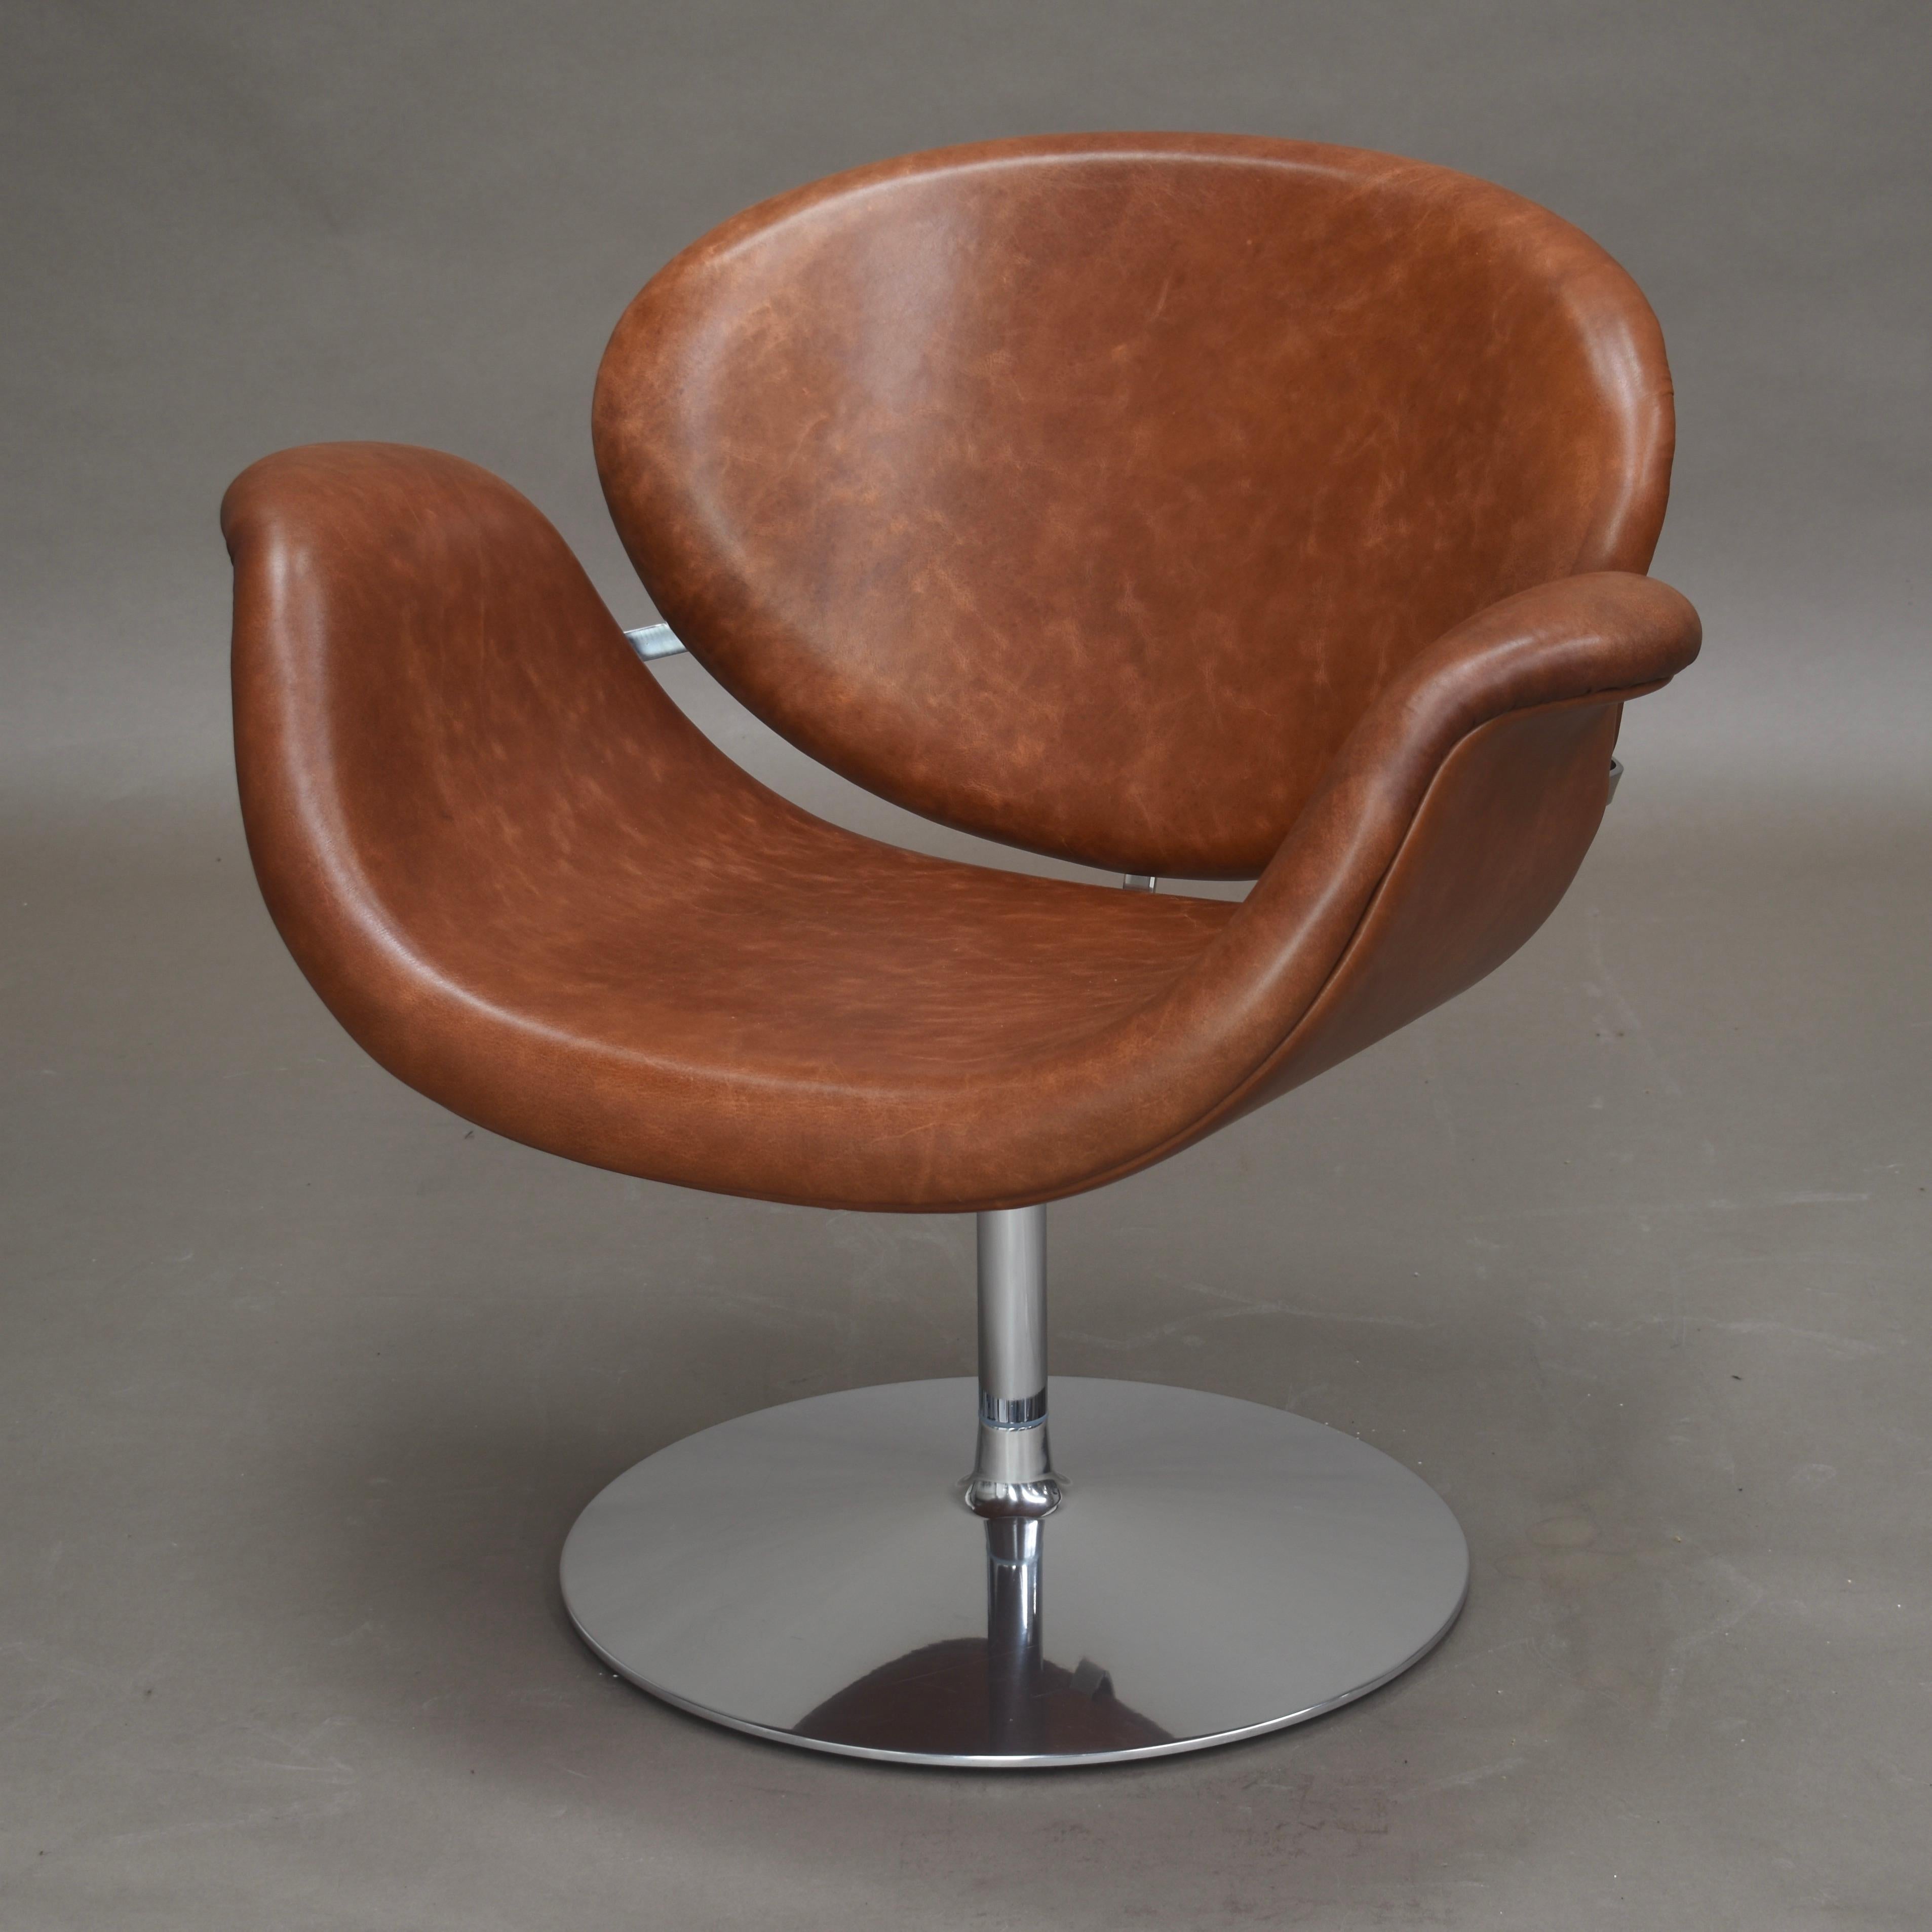 L'iconique fauteuil pivotant Tulip Midi de Pierre Paulin pour Artifort, Pays-Bas - 1960.
Les chaises ont été retapissées par Artifort dans un cuir personnalisé d'Alphenberg.
Ce modèle est très confortable et offre un bon soutien ergonomique, en